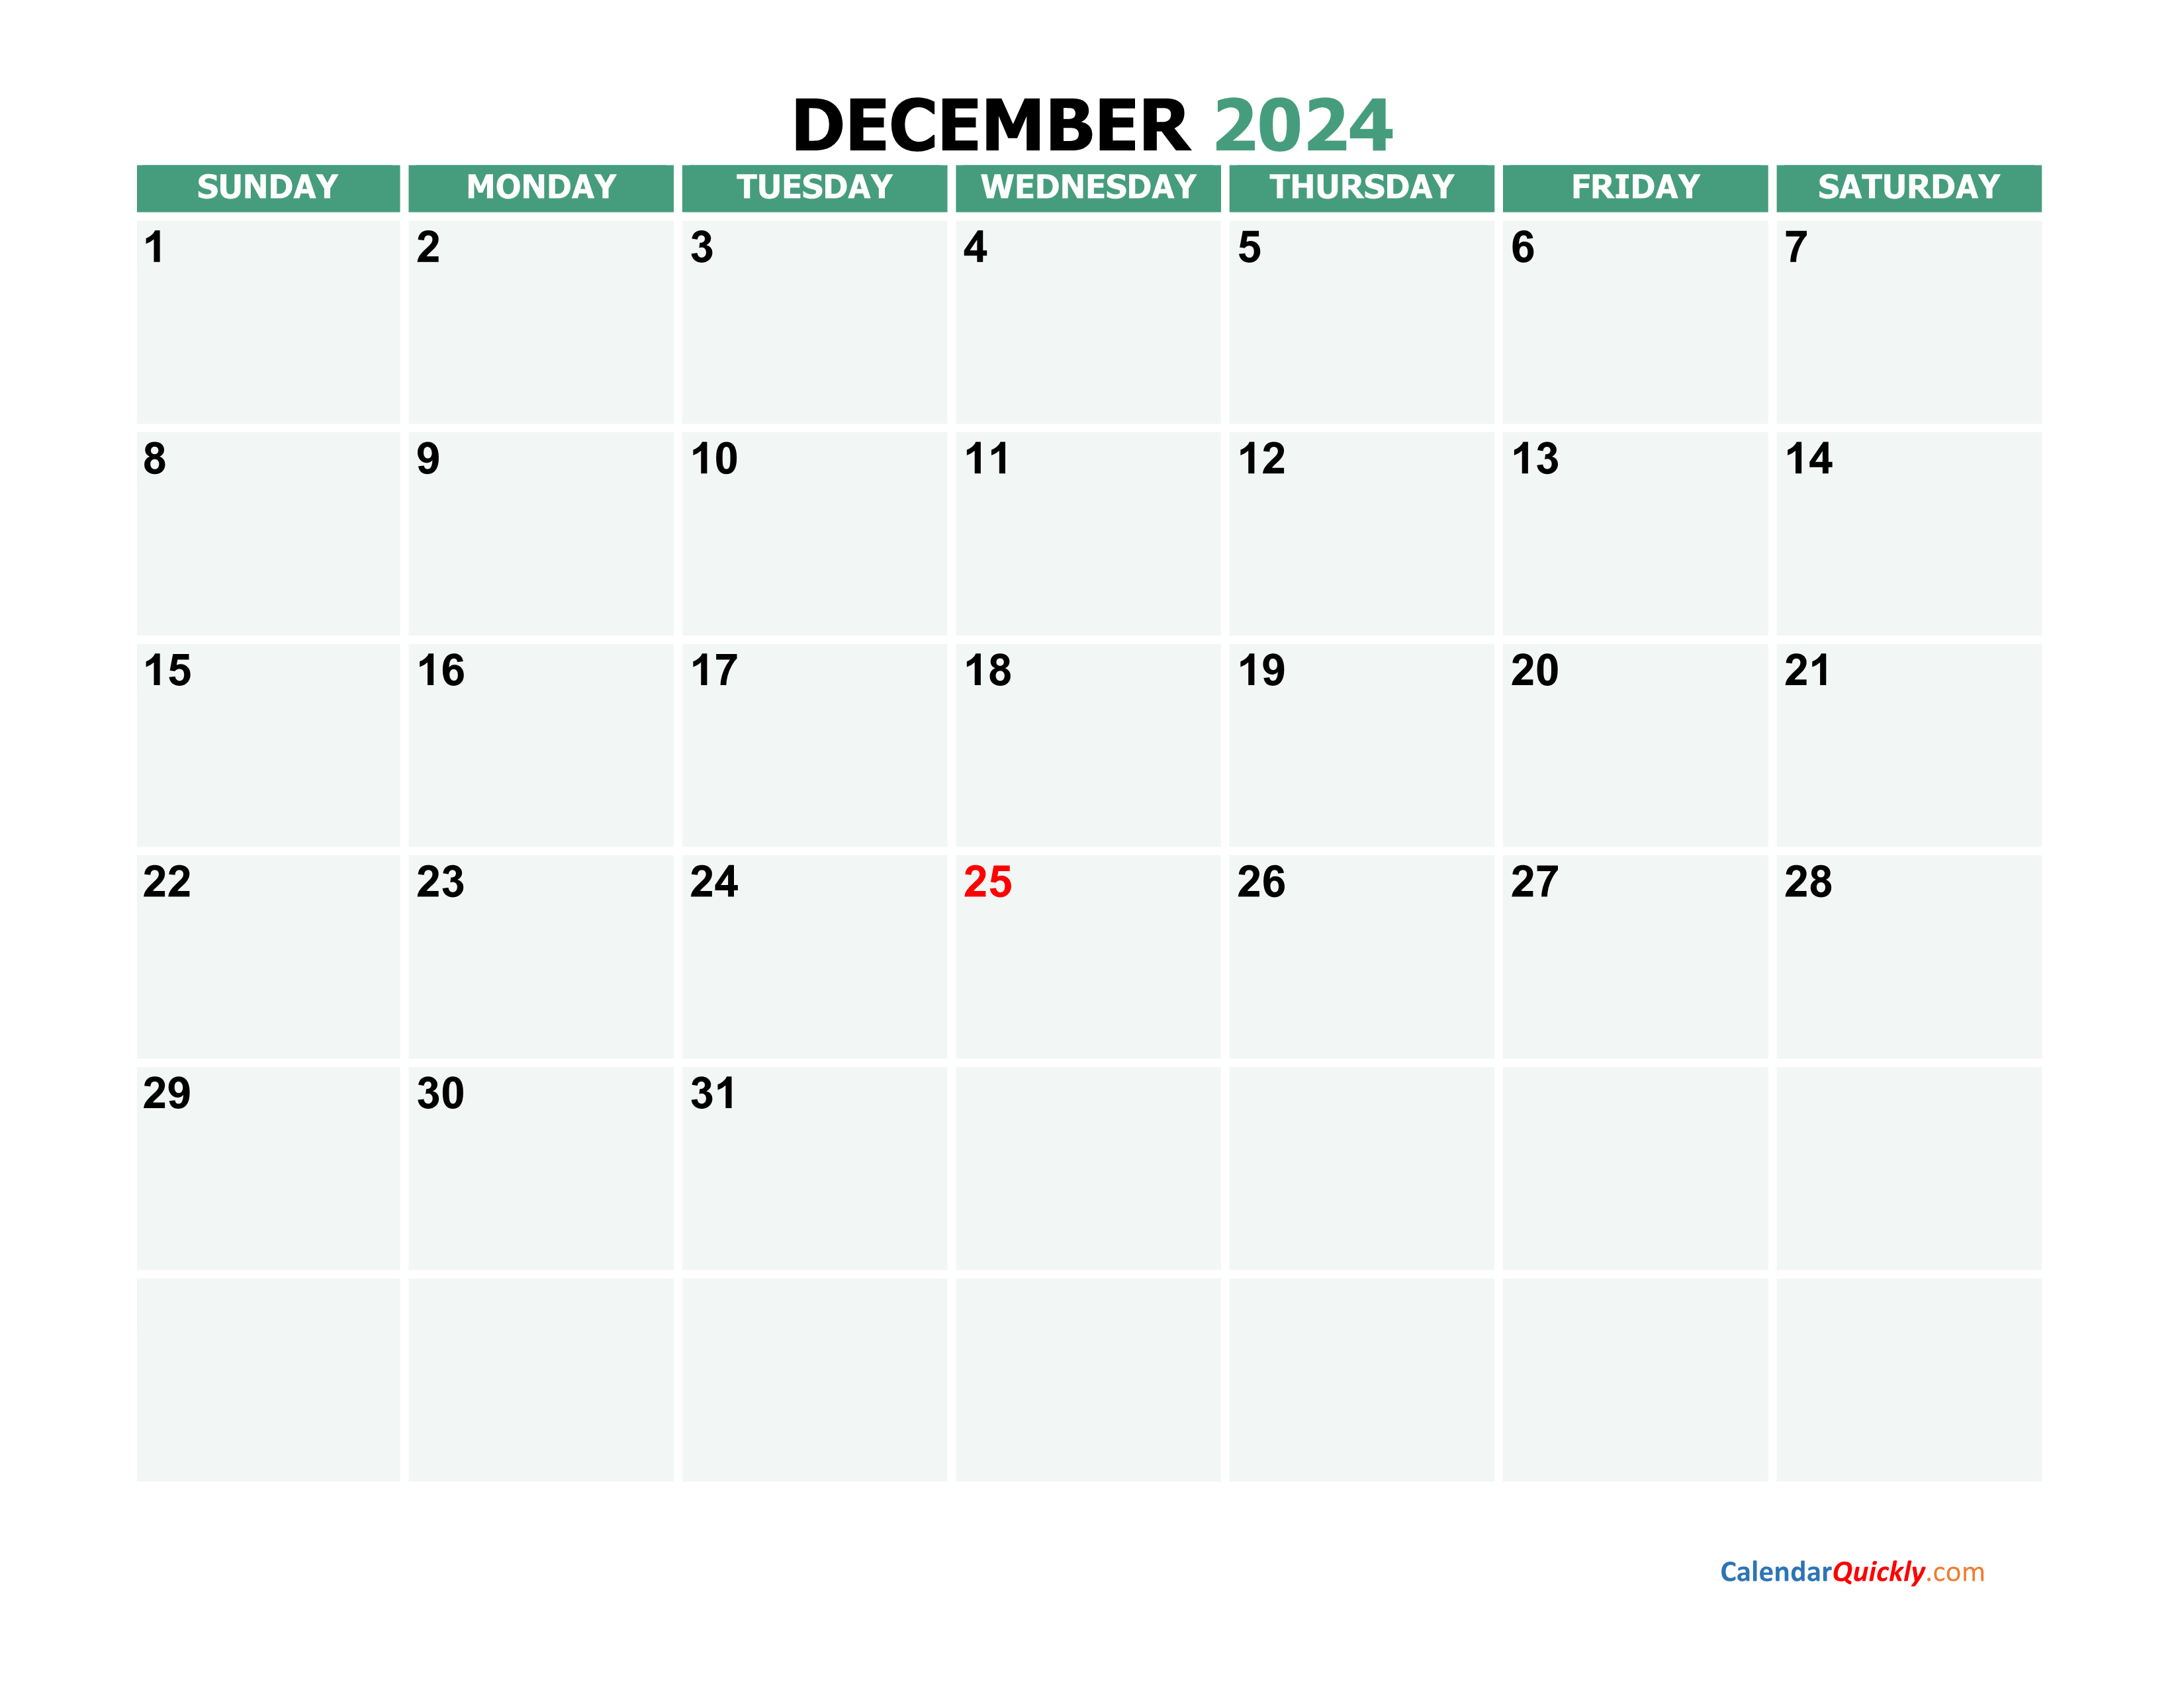 november-calendar-2024-with-holidays-calendar-quickly